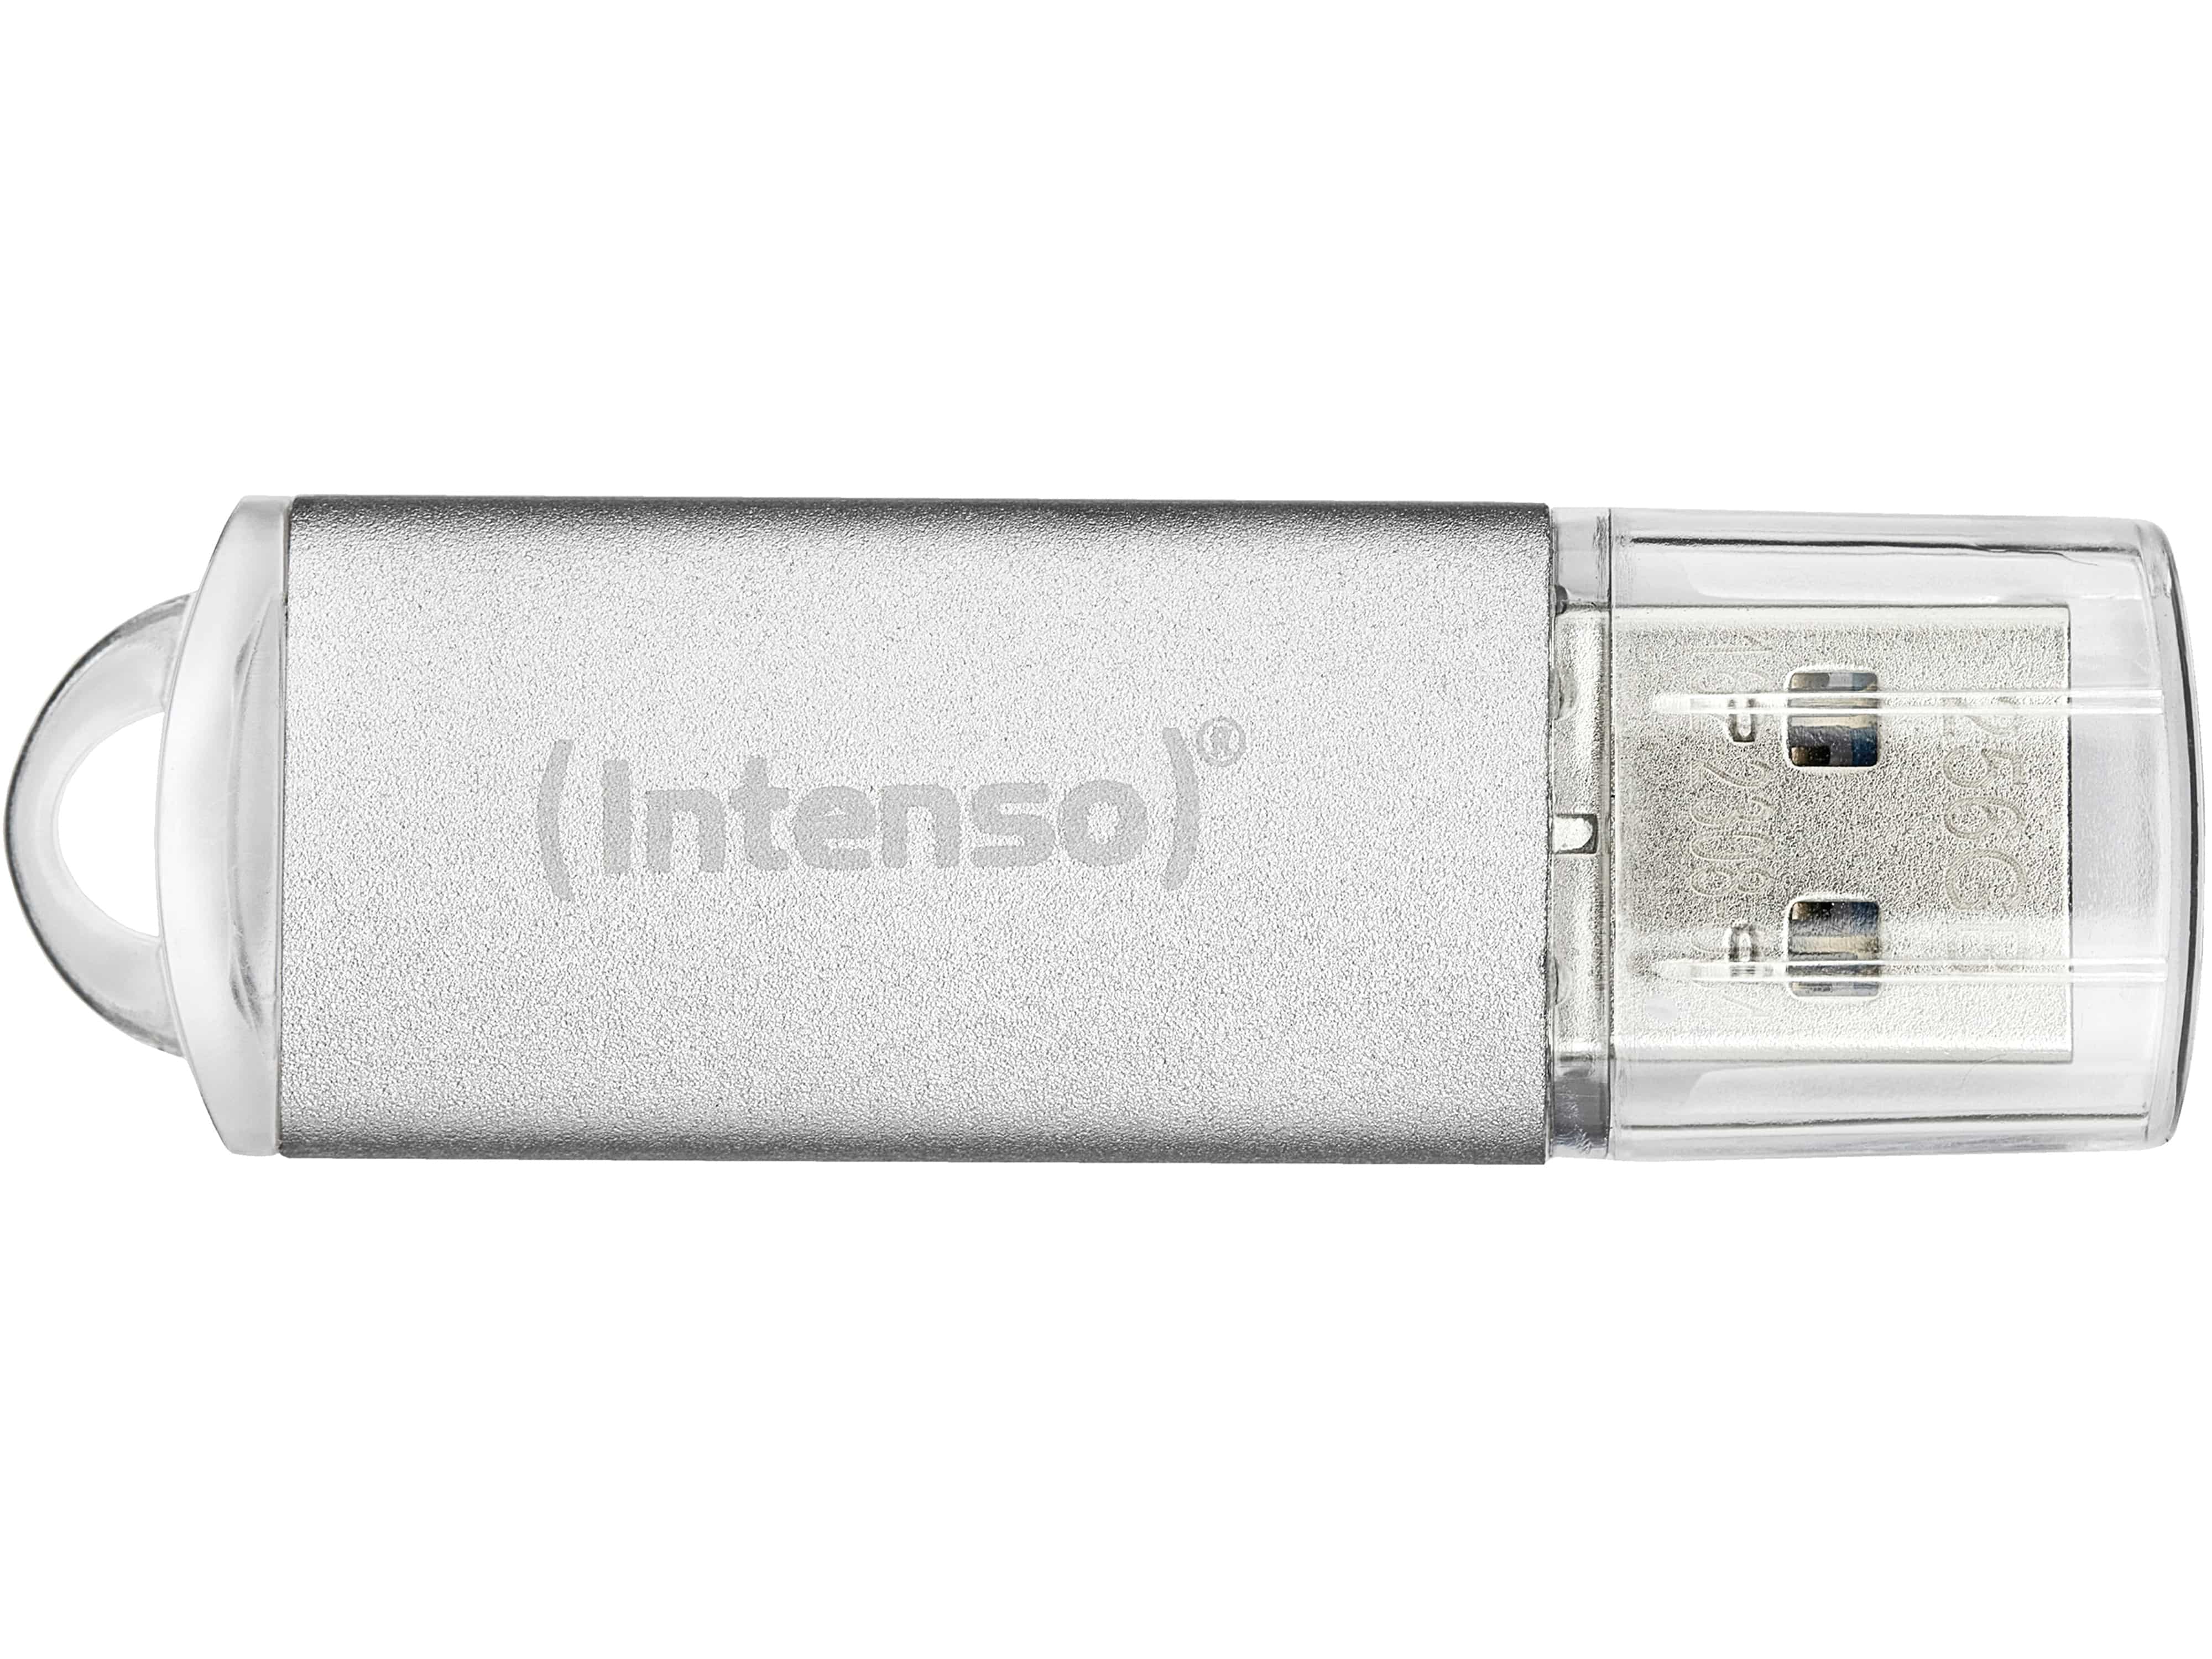 INTENSO USB-Stick Jet Line, USB-A, 32 GB